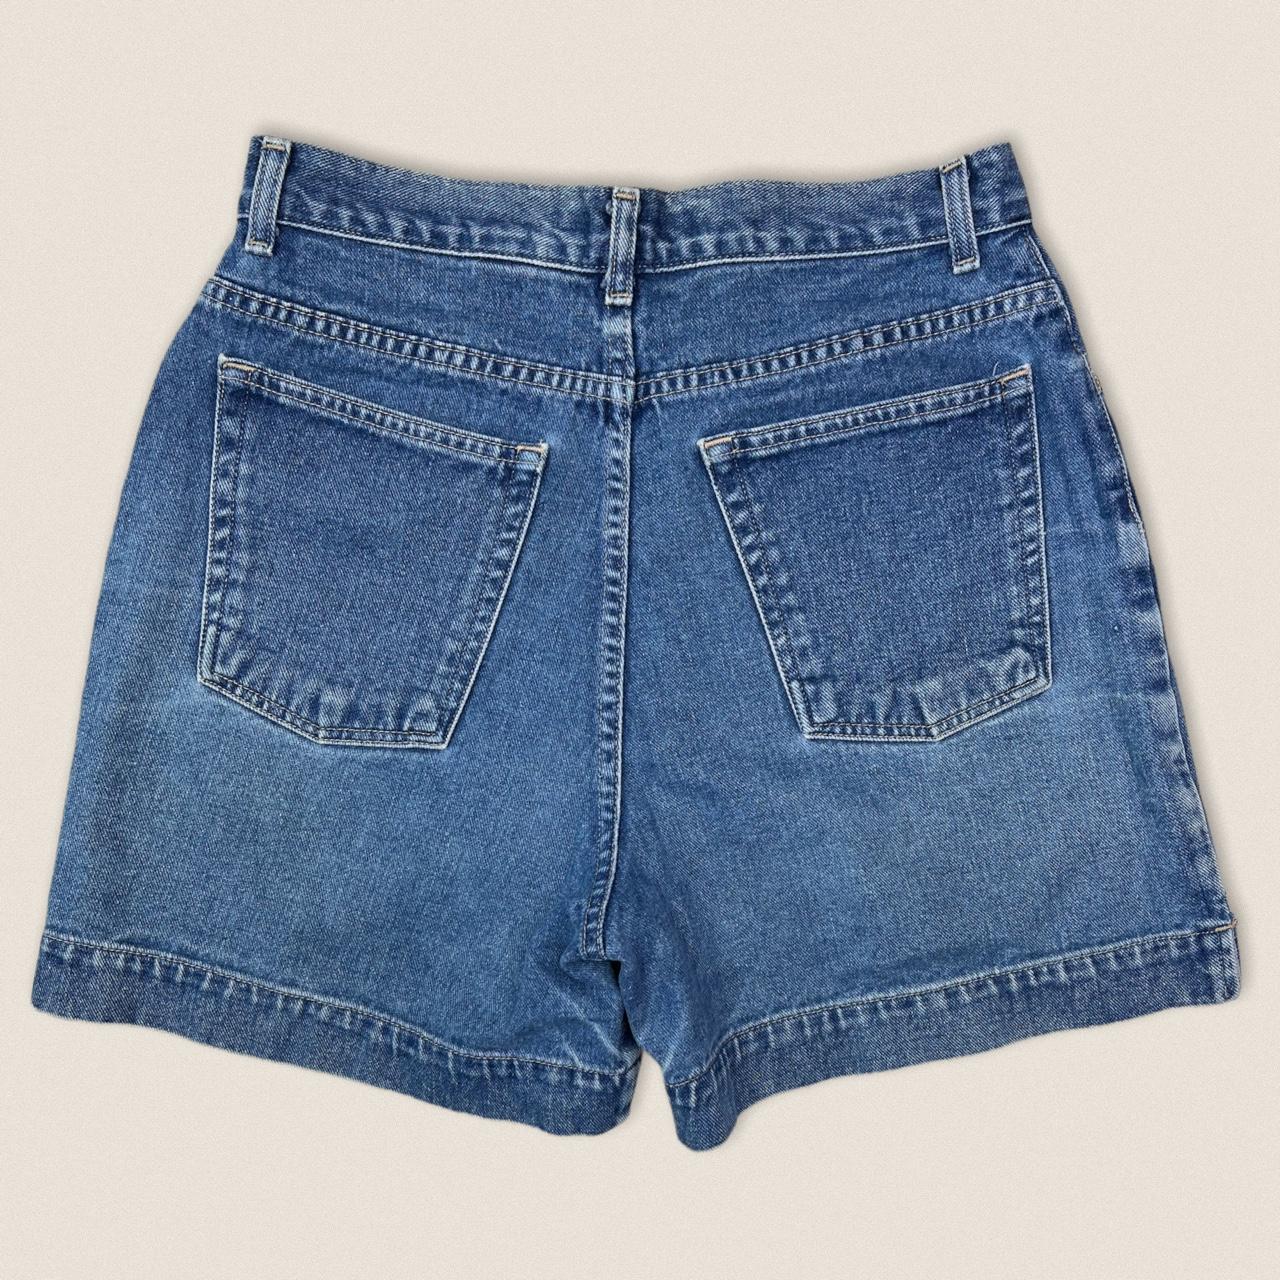 Vintage 90s mom jean Denim Shorts size 27” High... - Depop